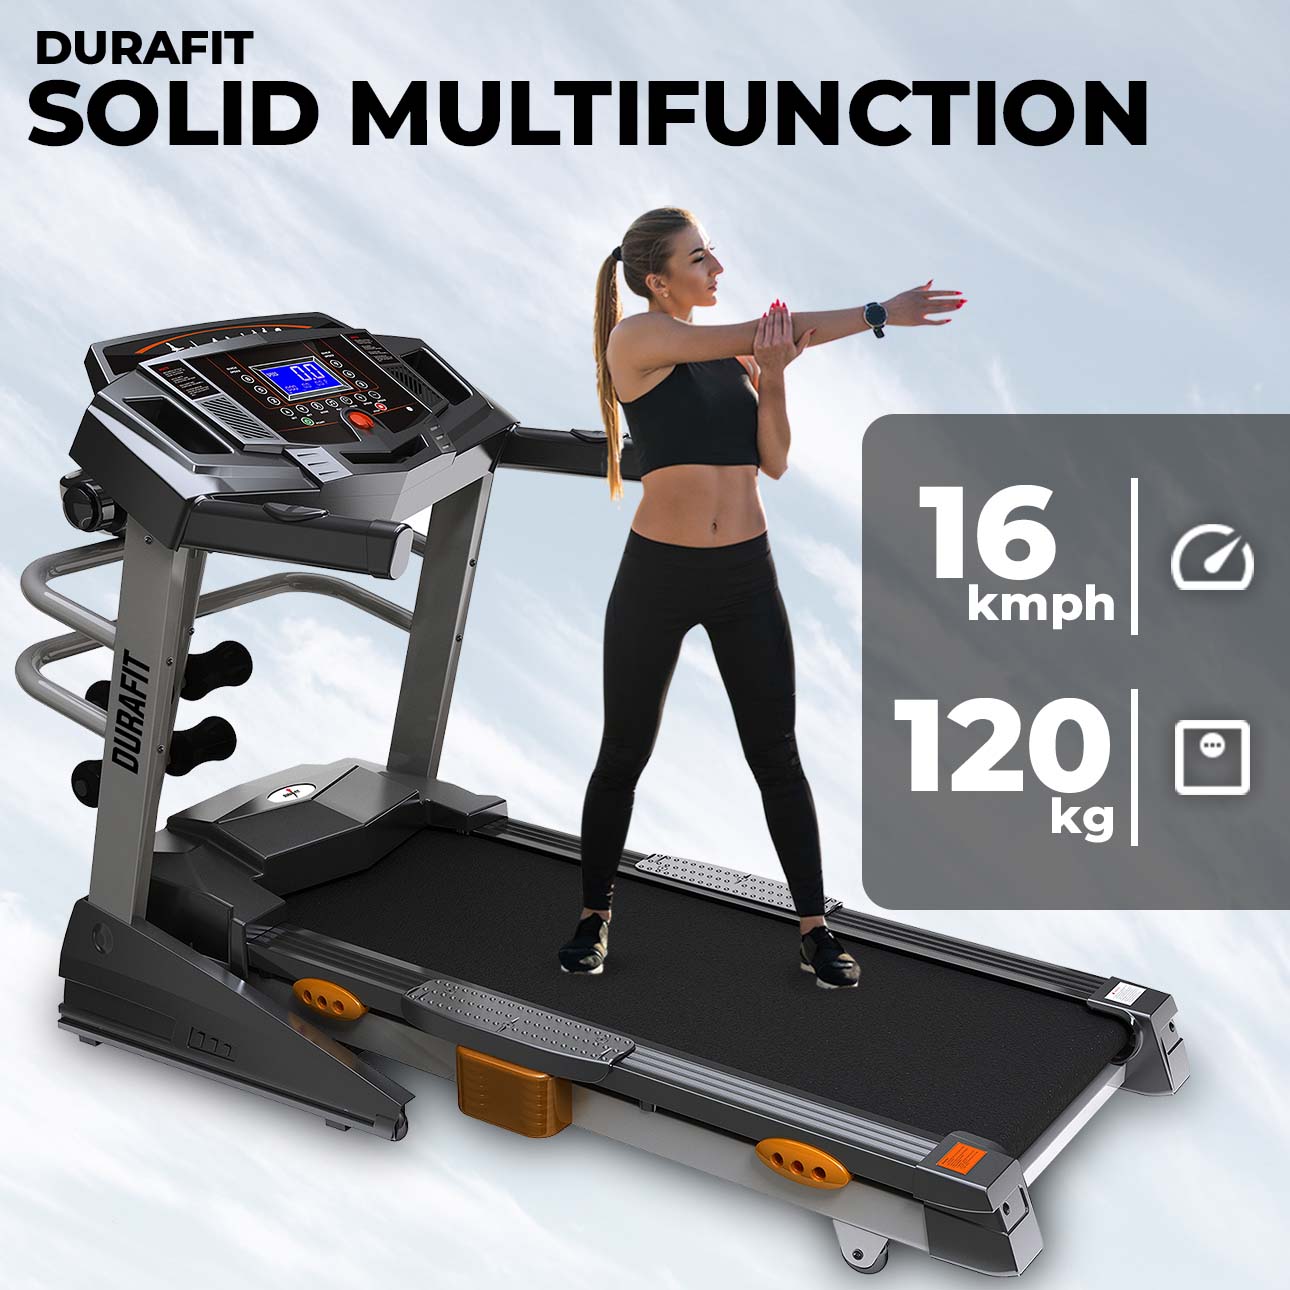 Durafit Solid Multifunction Treadmill